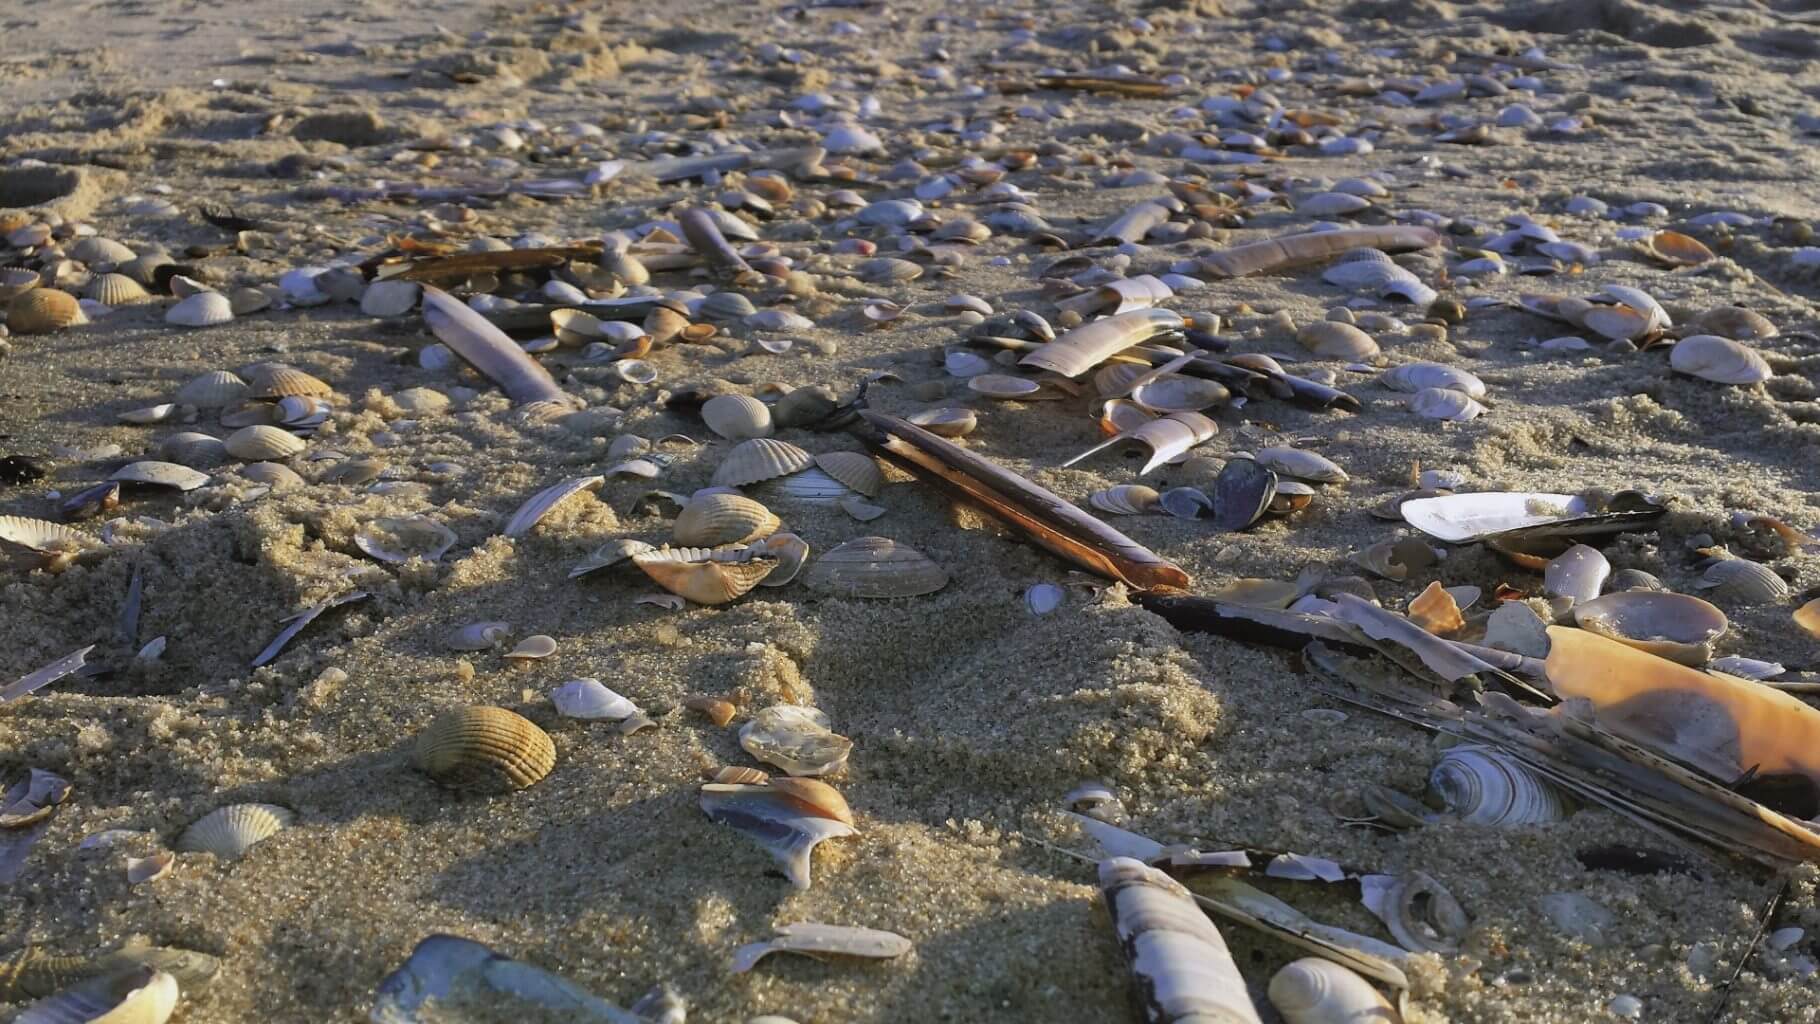 Muscheln am Strand von Sylt